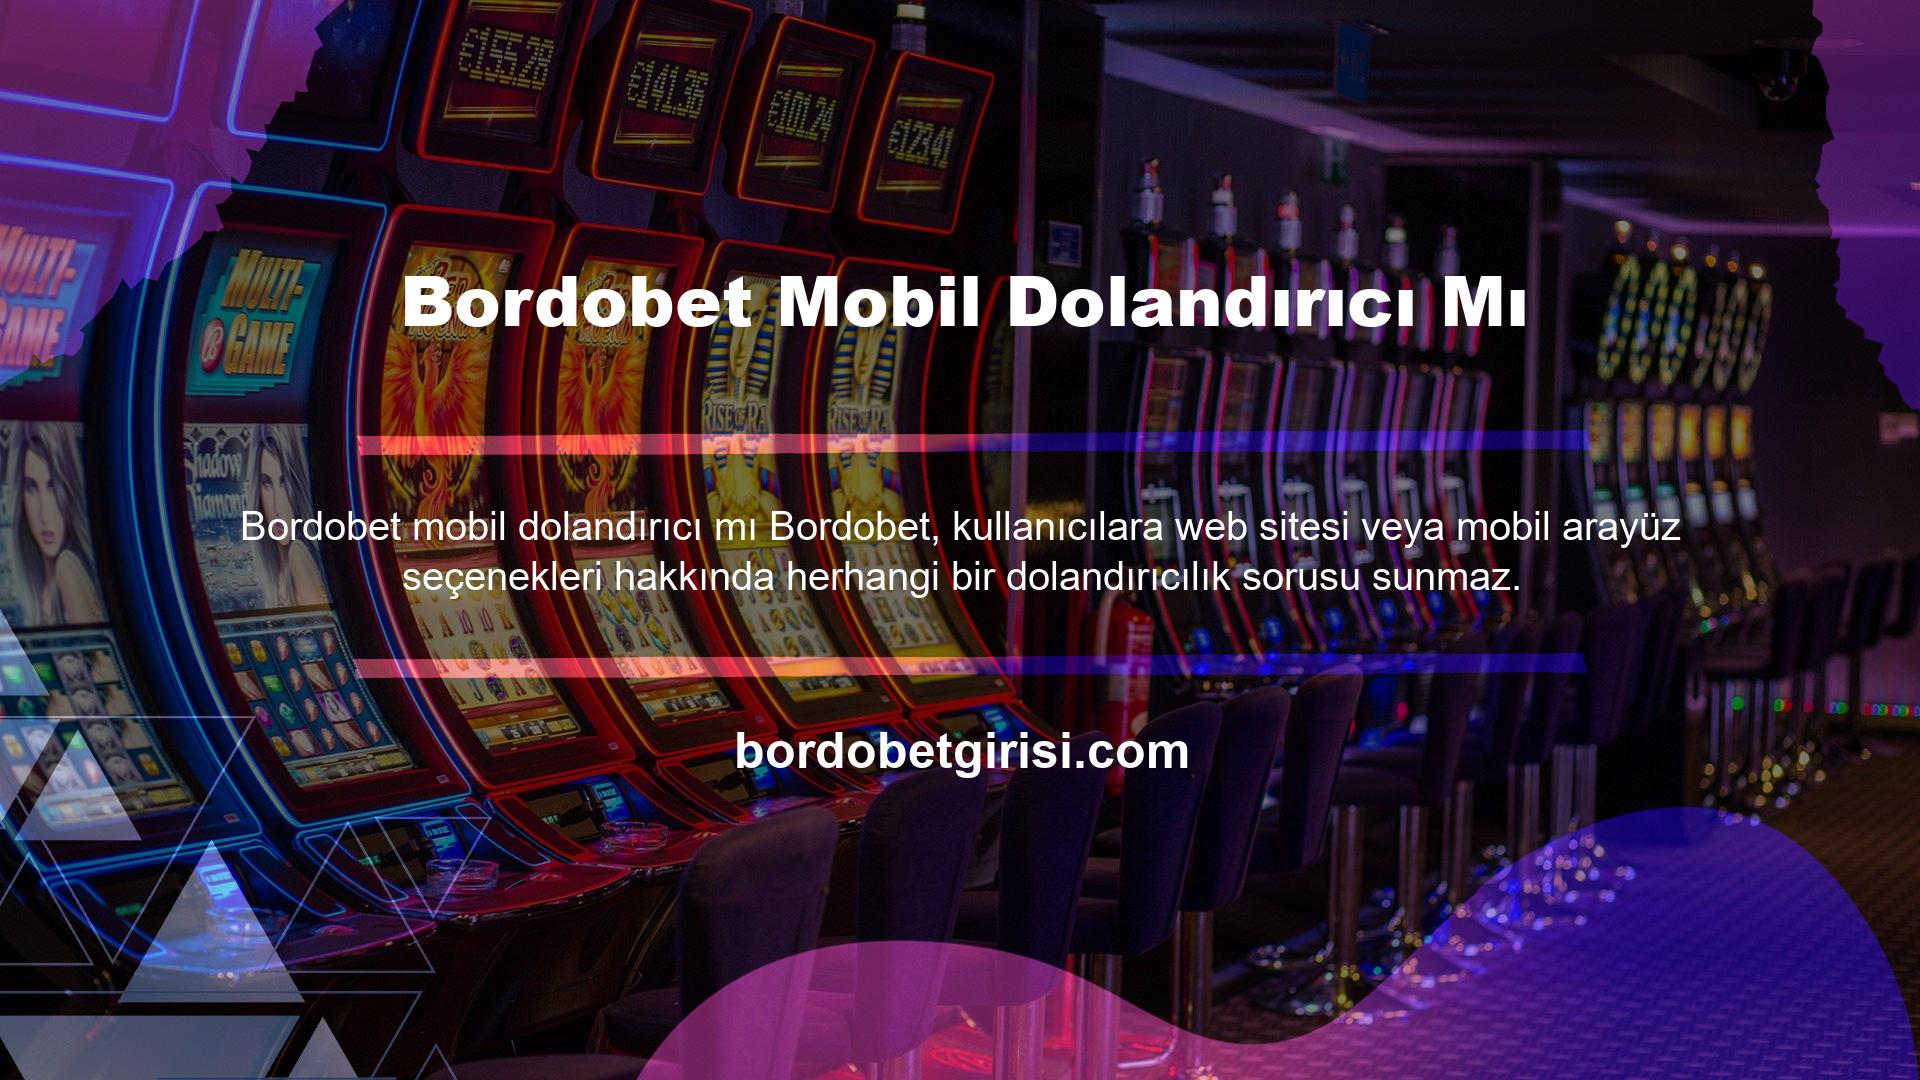 Bordobet mobil cihazlarda hile yapmamak için sitedeki tüm oyun alternatiflerini takip edebilir vs